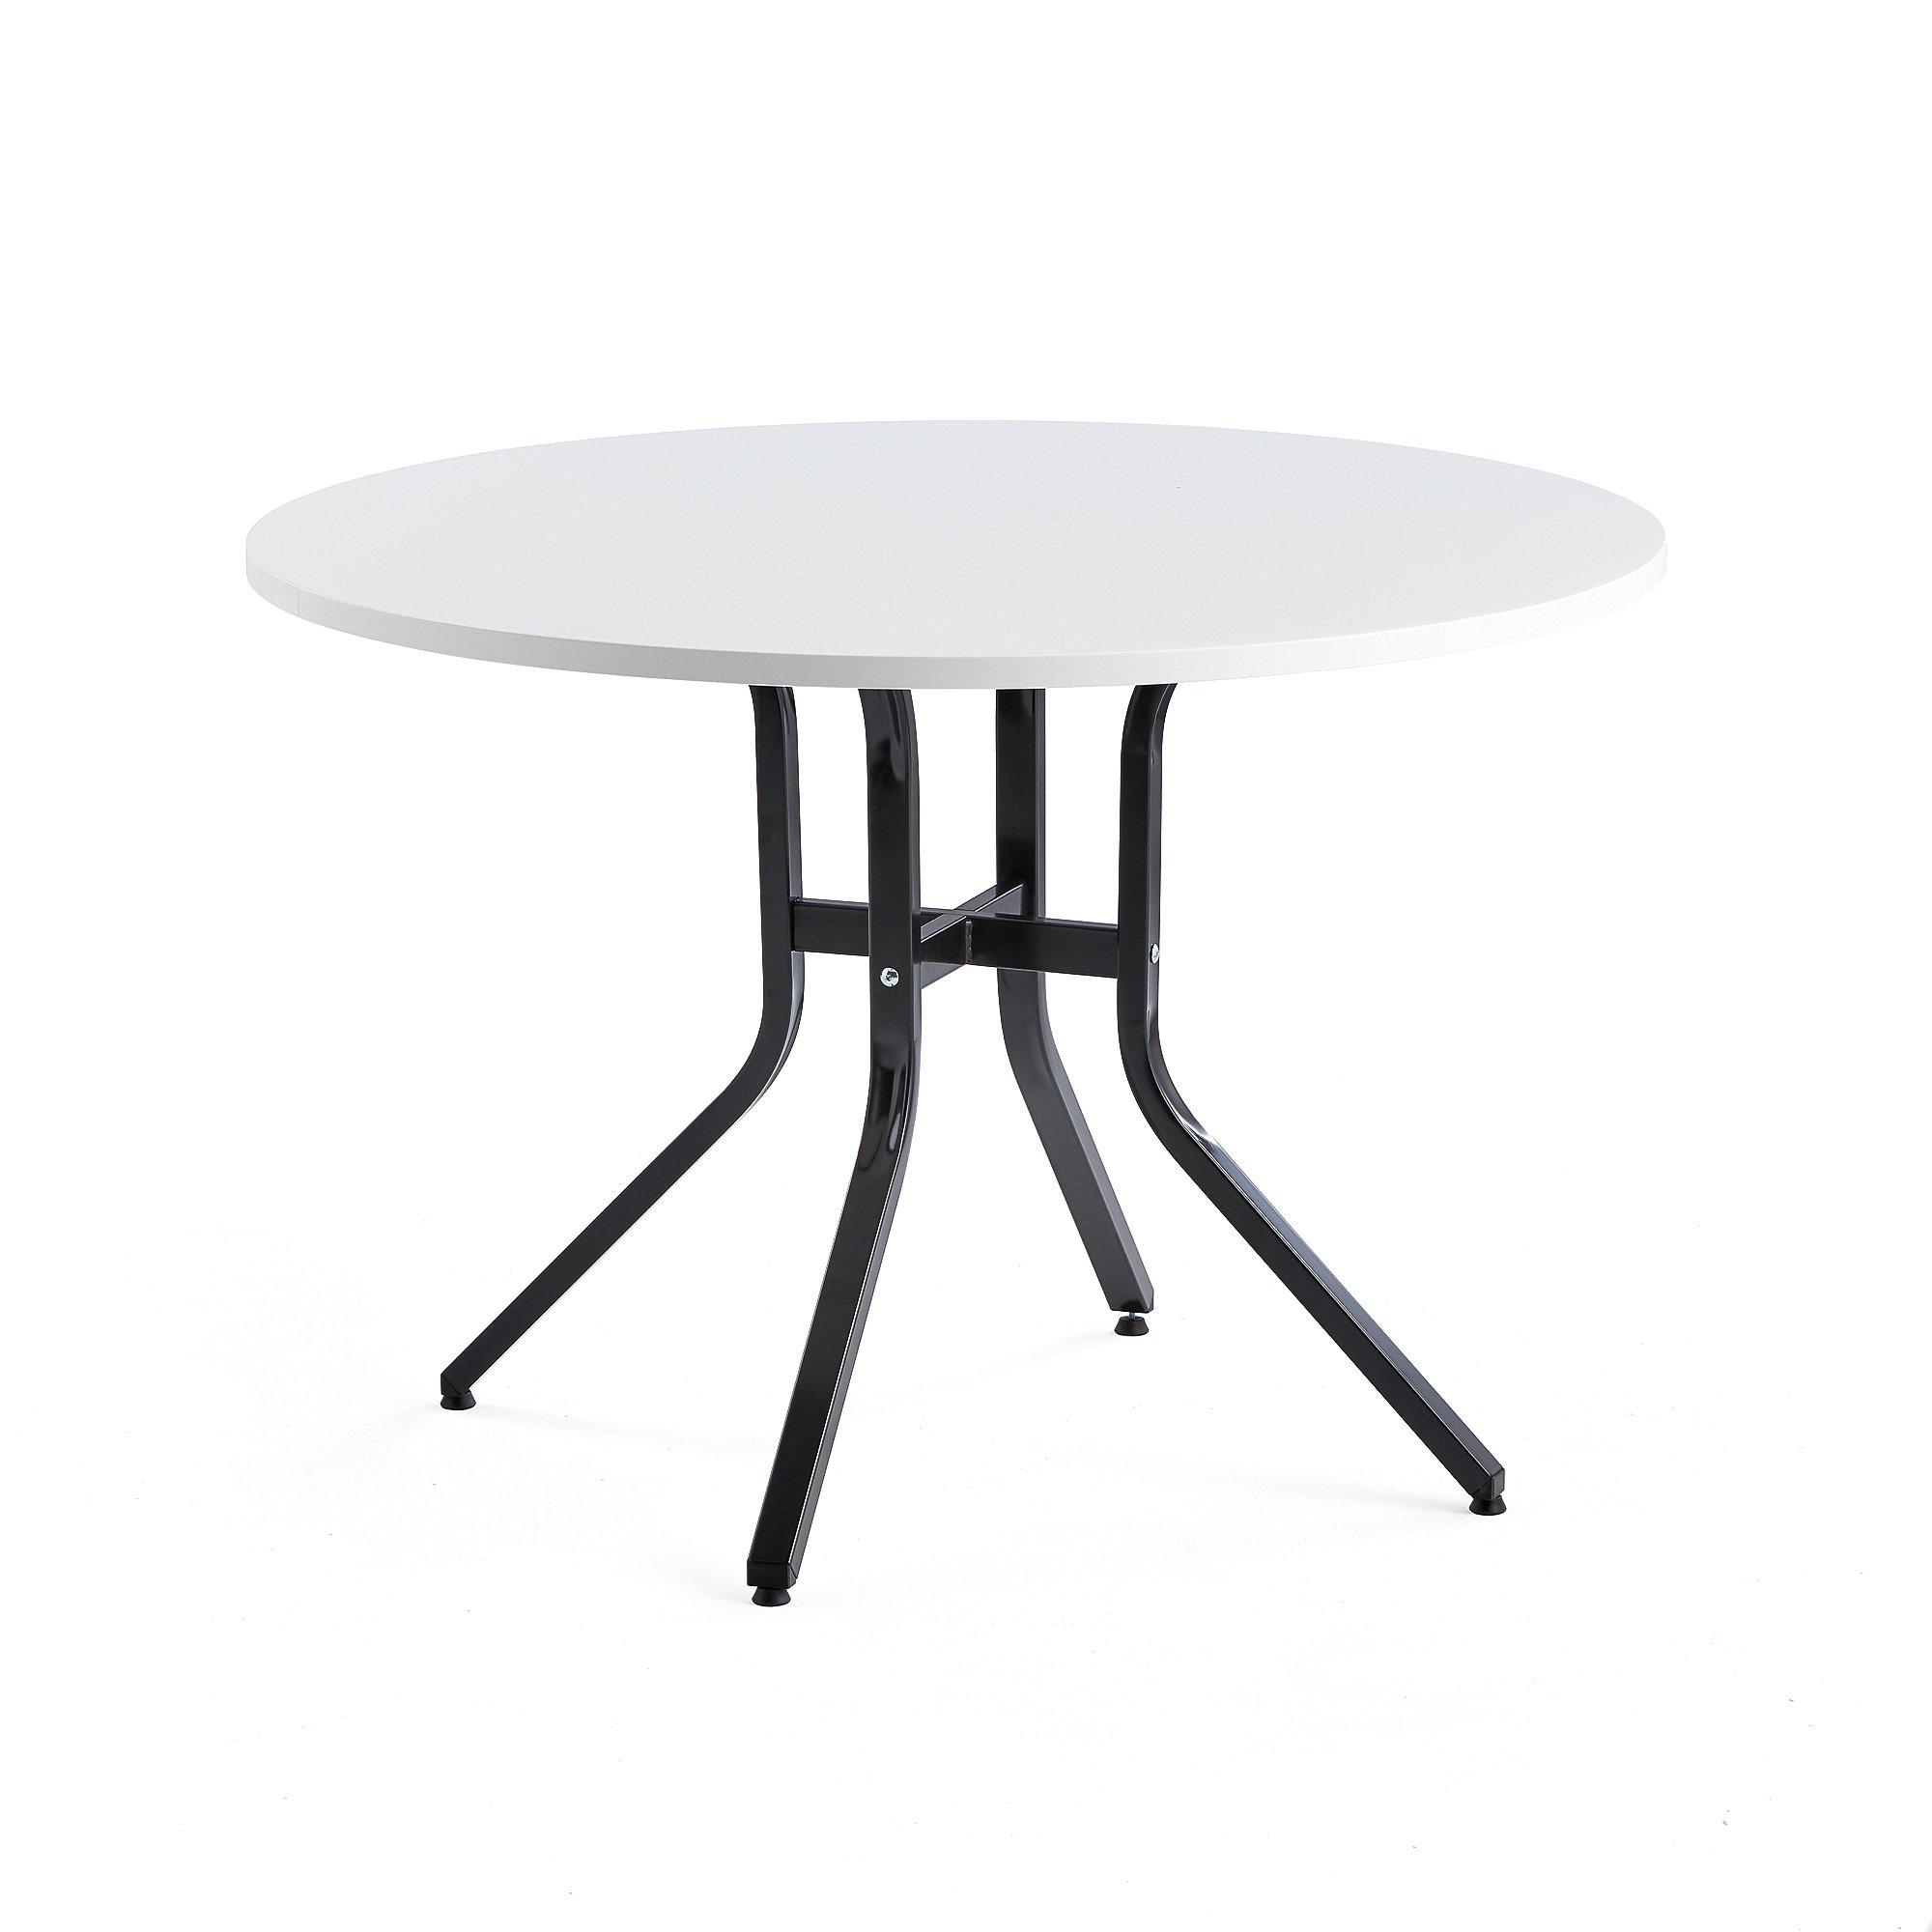 Stůl VARIOUS, Ø1100 mm, výška 740 mm, černá, bílá